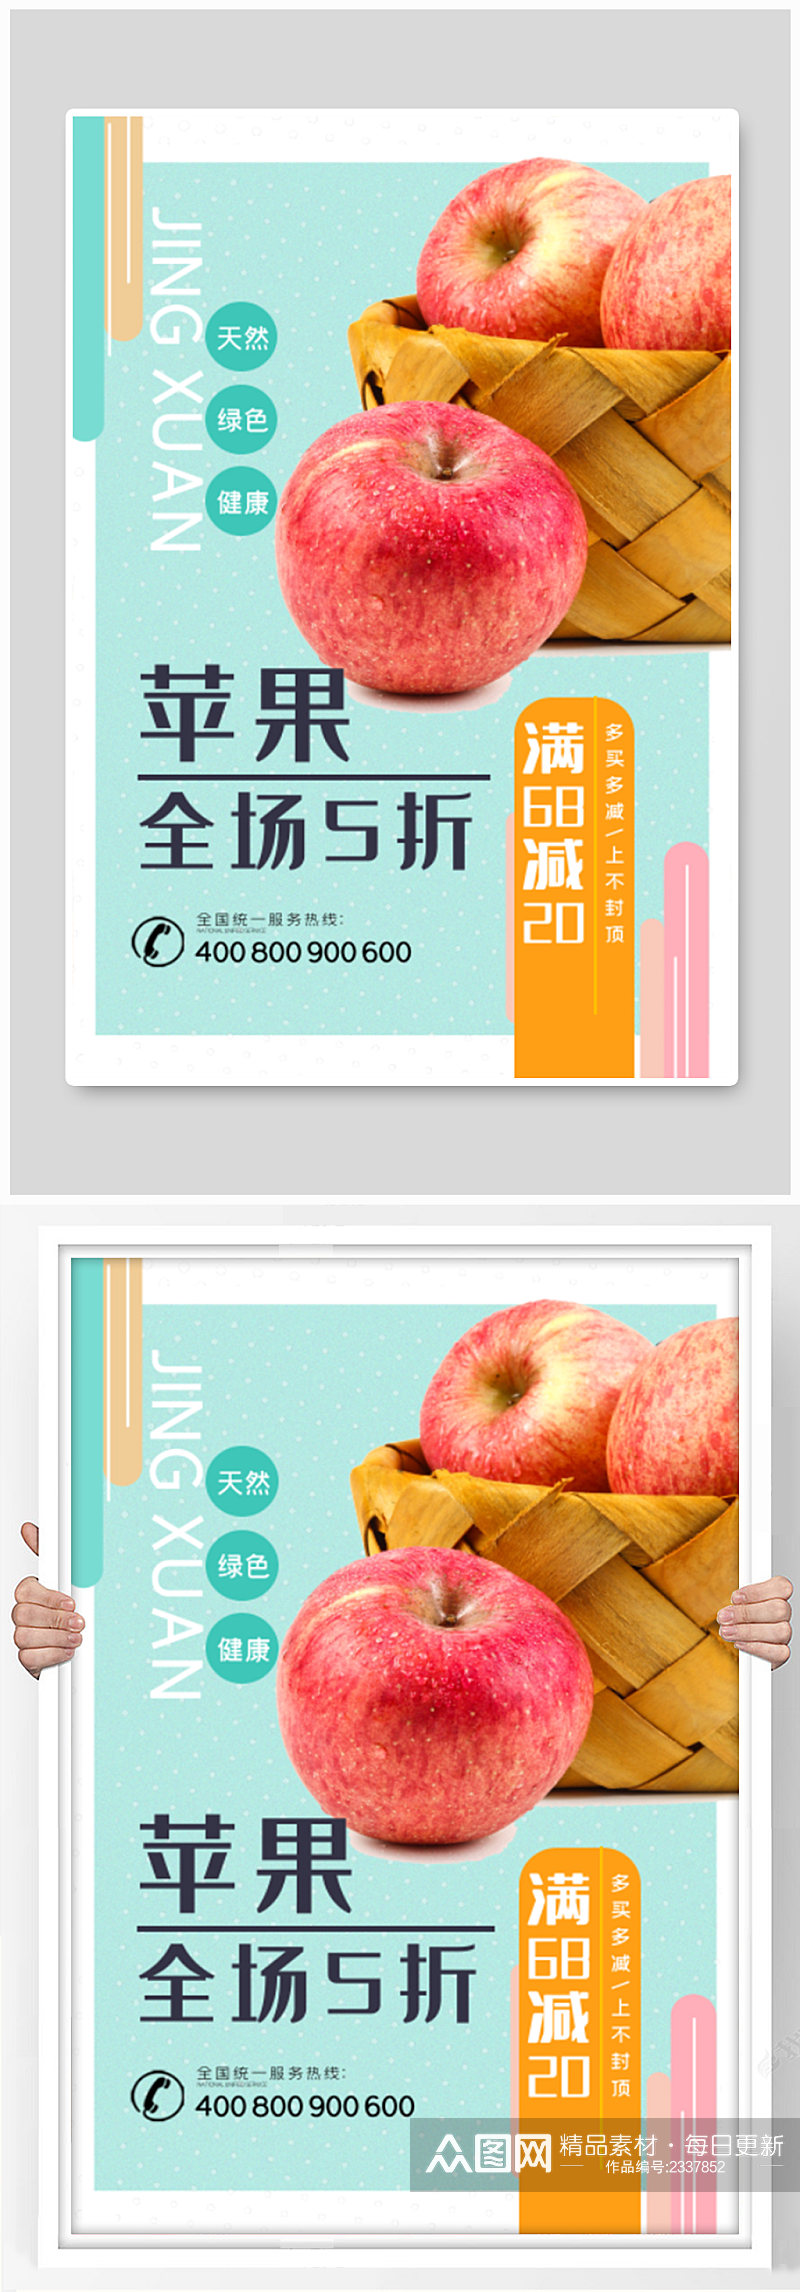 水果店苹果五折促销海报素材